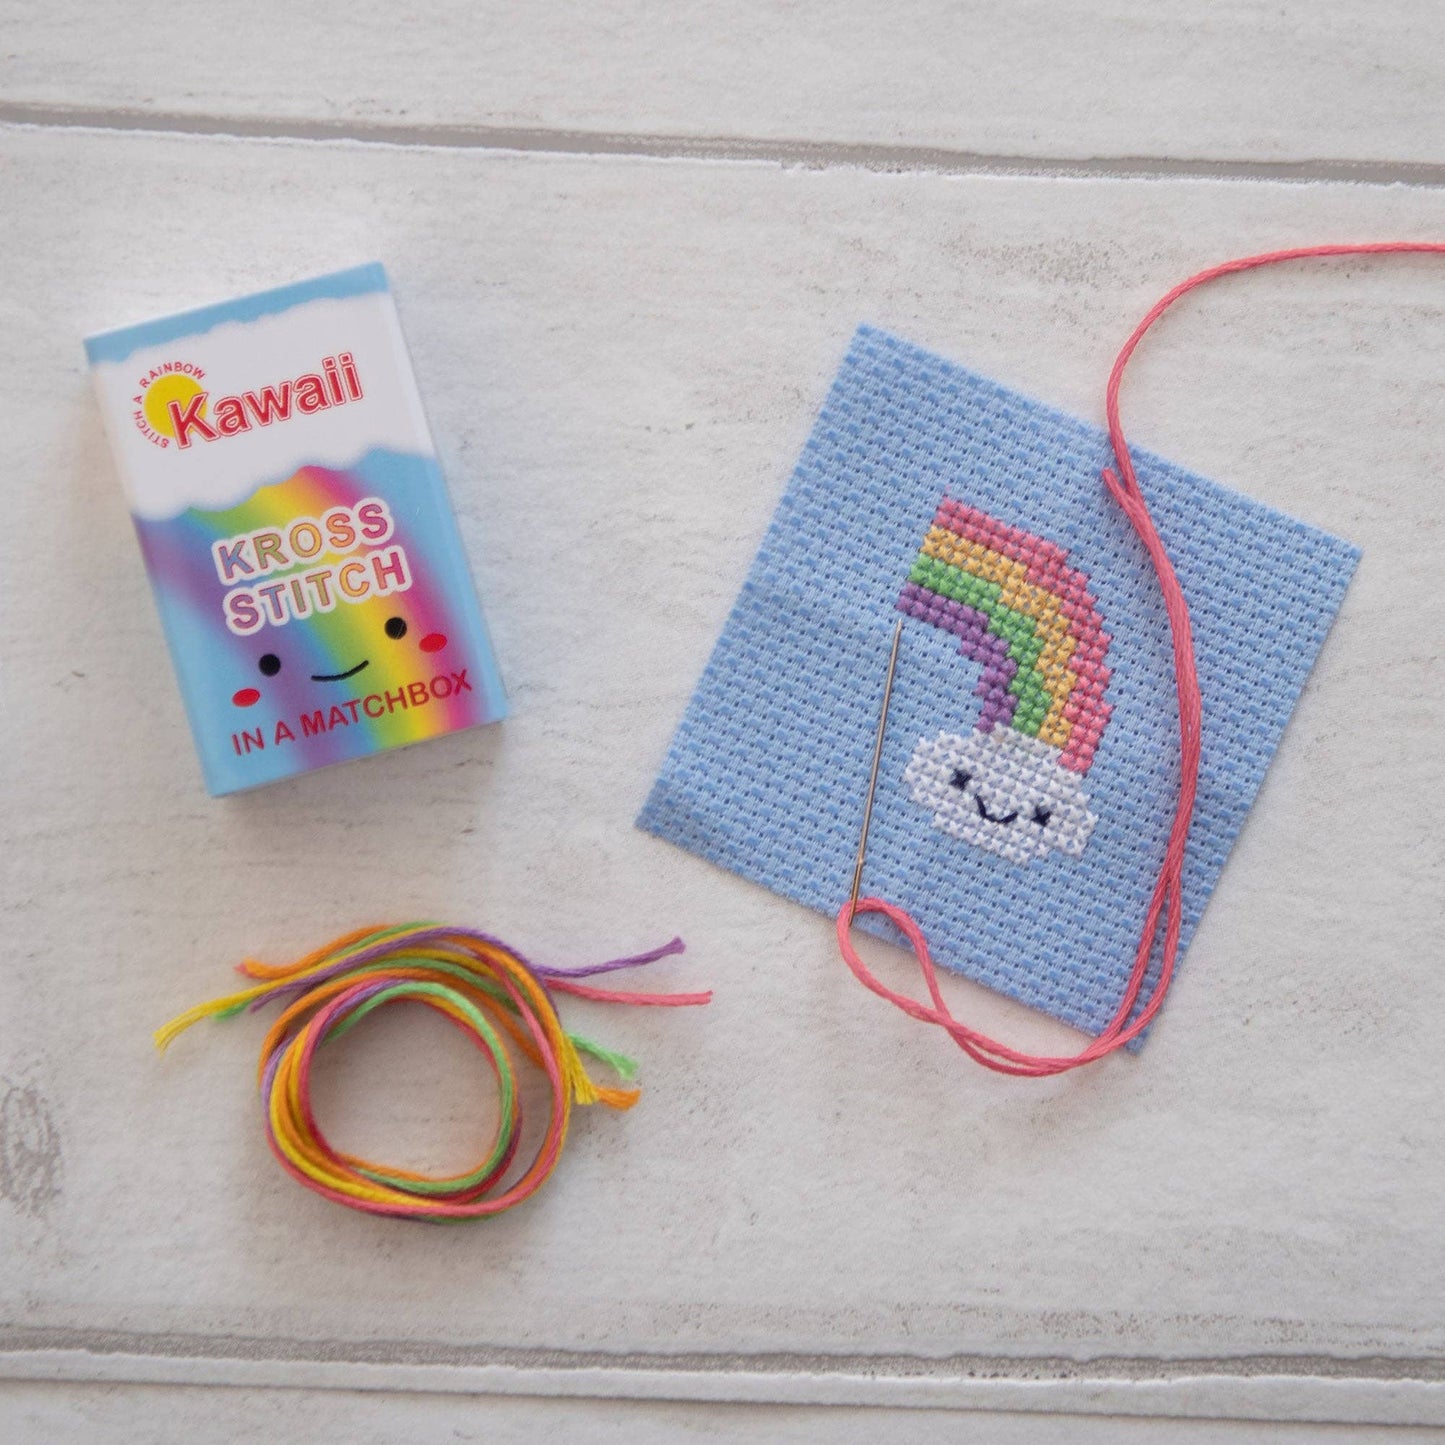 Rainbow Cloud Mini Cross Stitch Kit  In A Matchbox